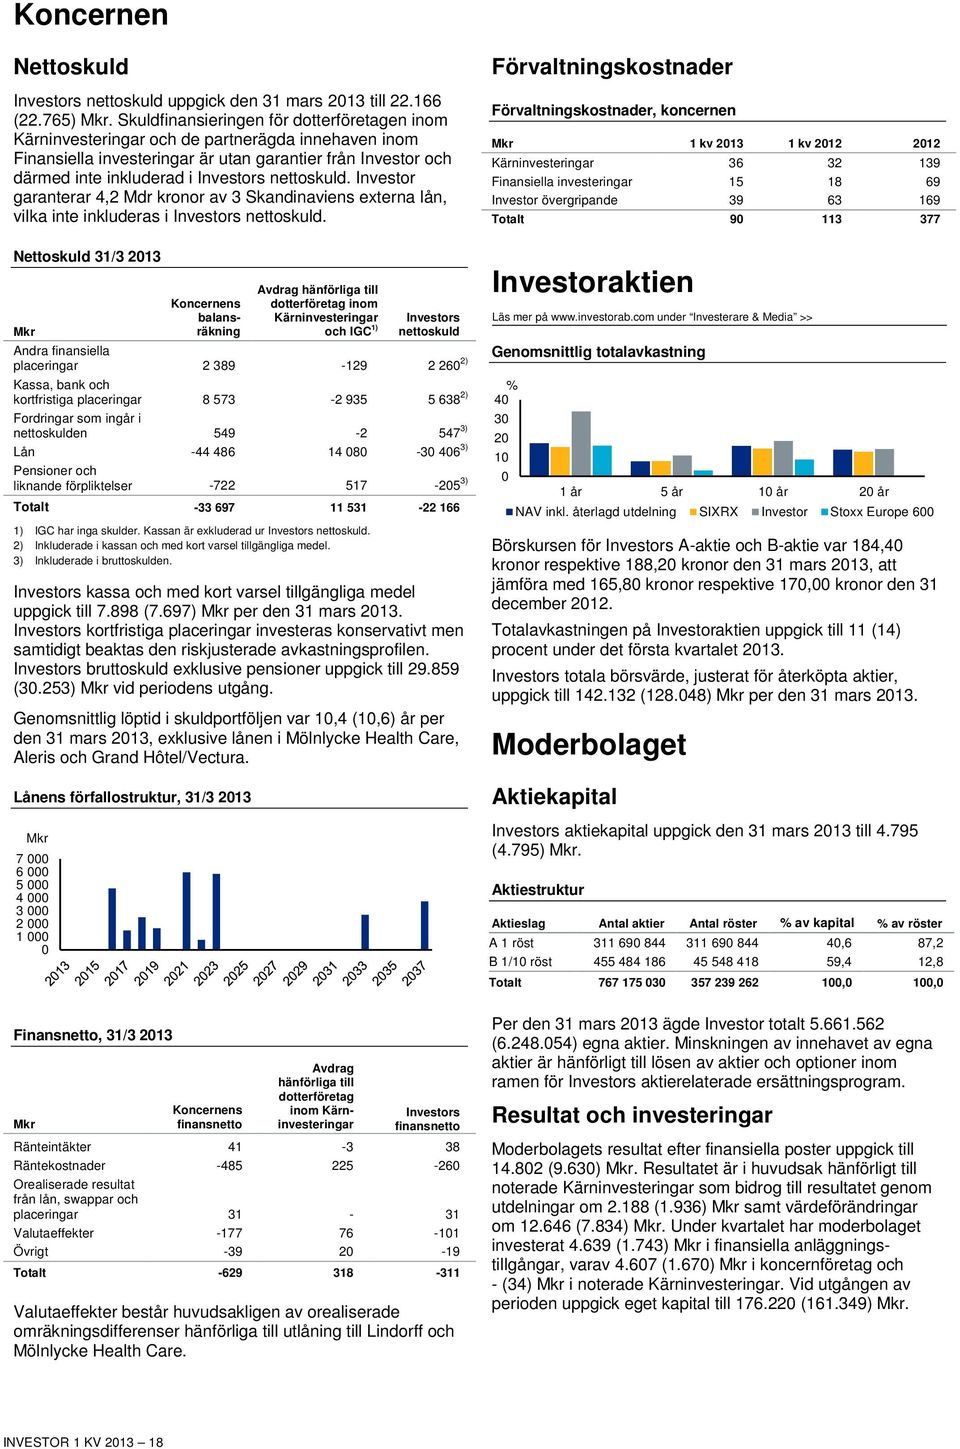 nettoskuld. Investor garanterar 4,2 Mdr kronor av 3 Skandinaviens externa lån, vilka inte inkluderas i Investors nettoskuld.